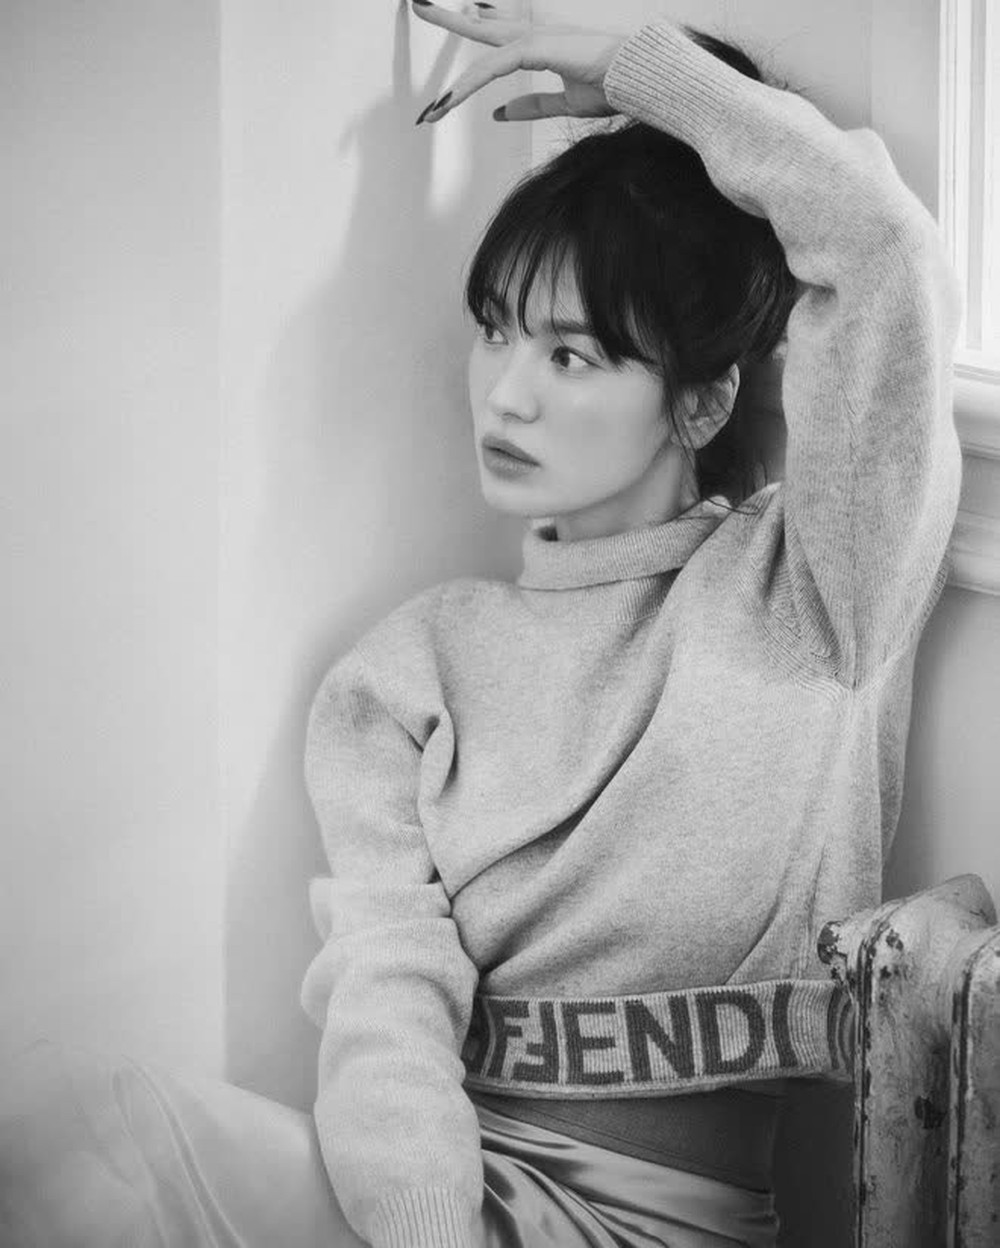 Song Hye Kyo tung ảnh B-cut đẹp như mơ: Không hề kém cạnh A-cut, đập tan mọi lời chê bai lão hóa - Ảnh 5.